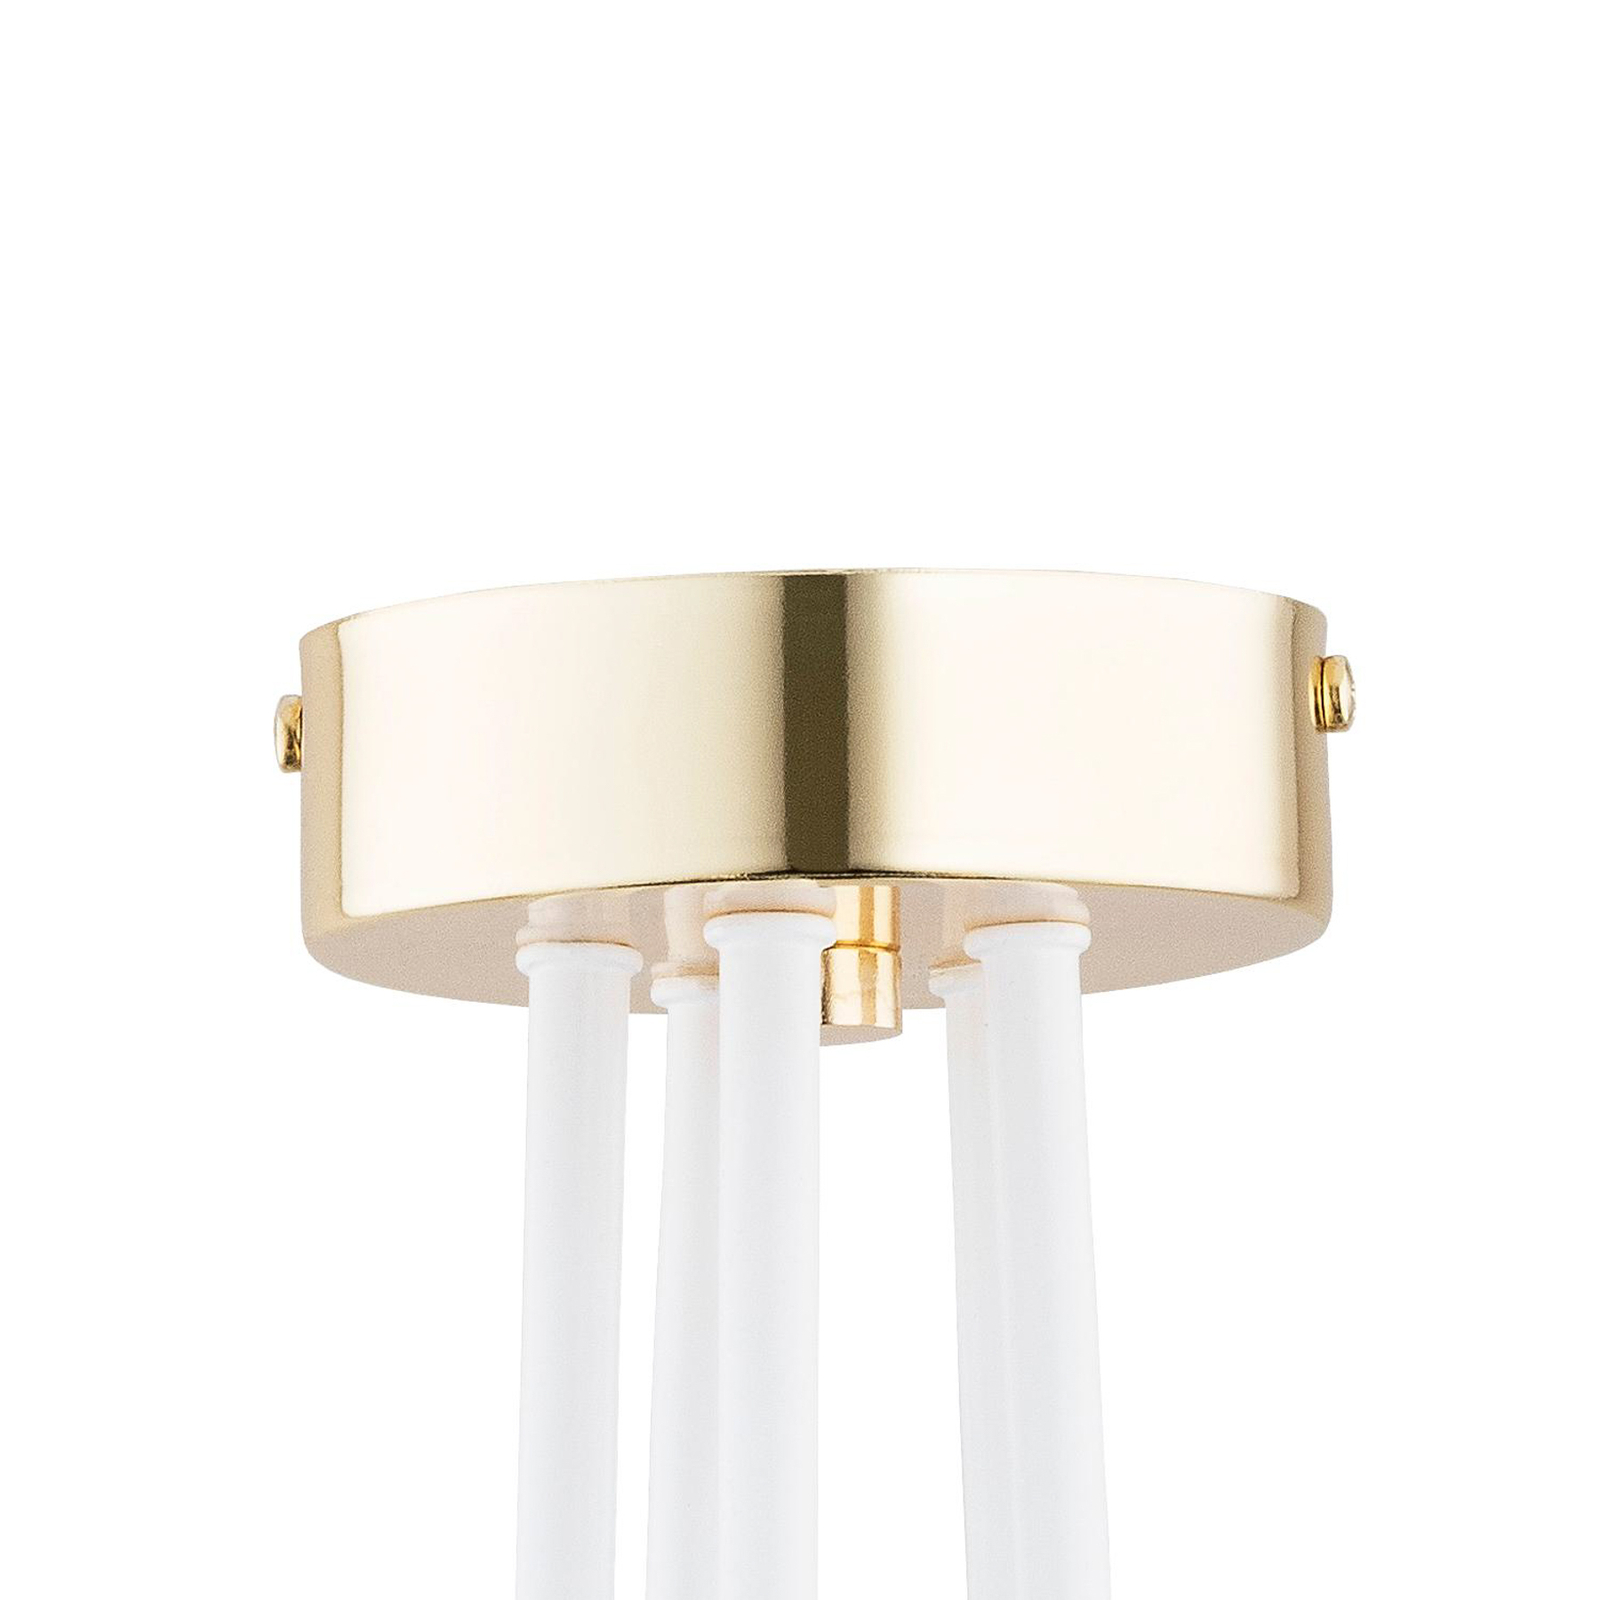 Tango ceiling light, white / gold-coloured, 5-bulb, Ø 55 cm